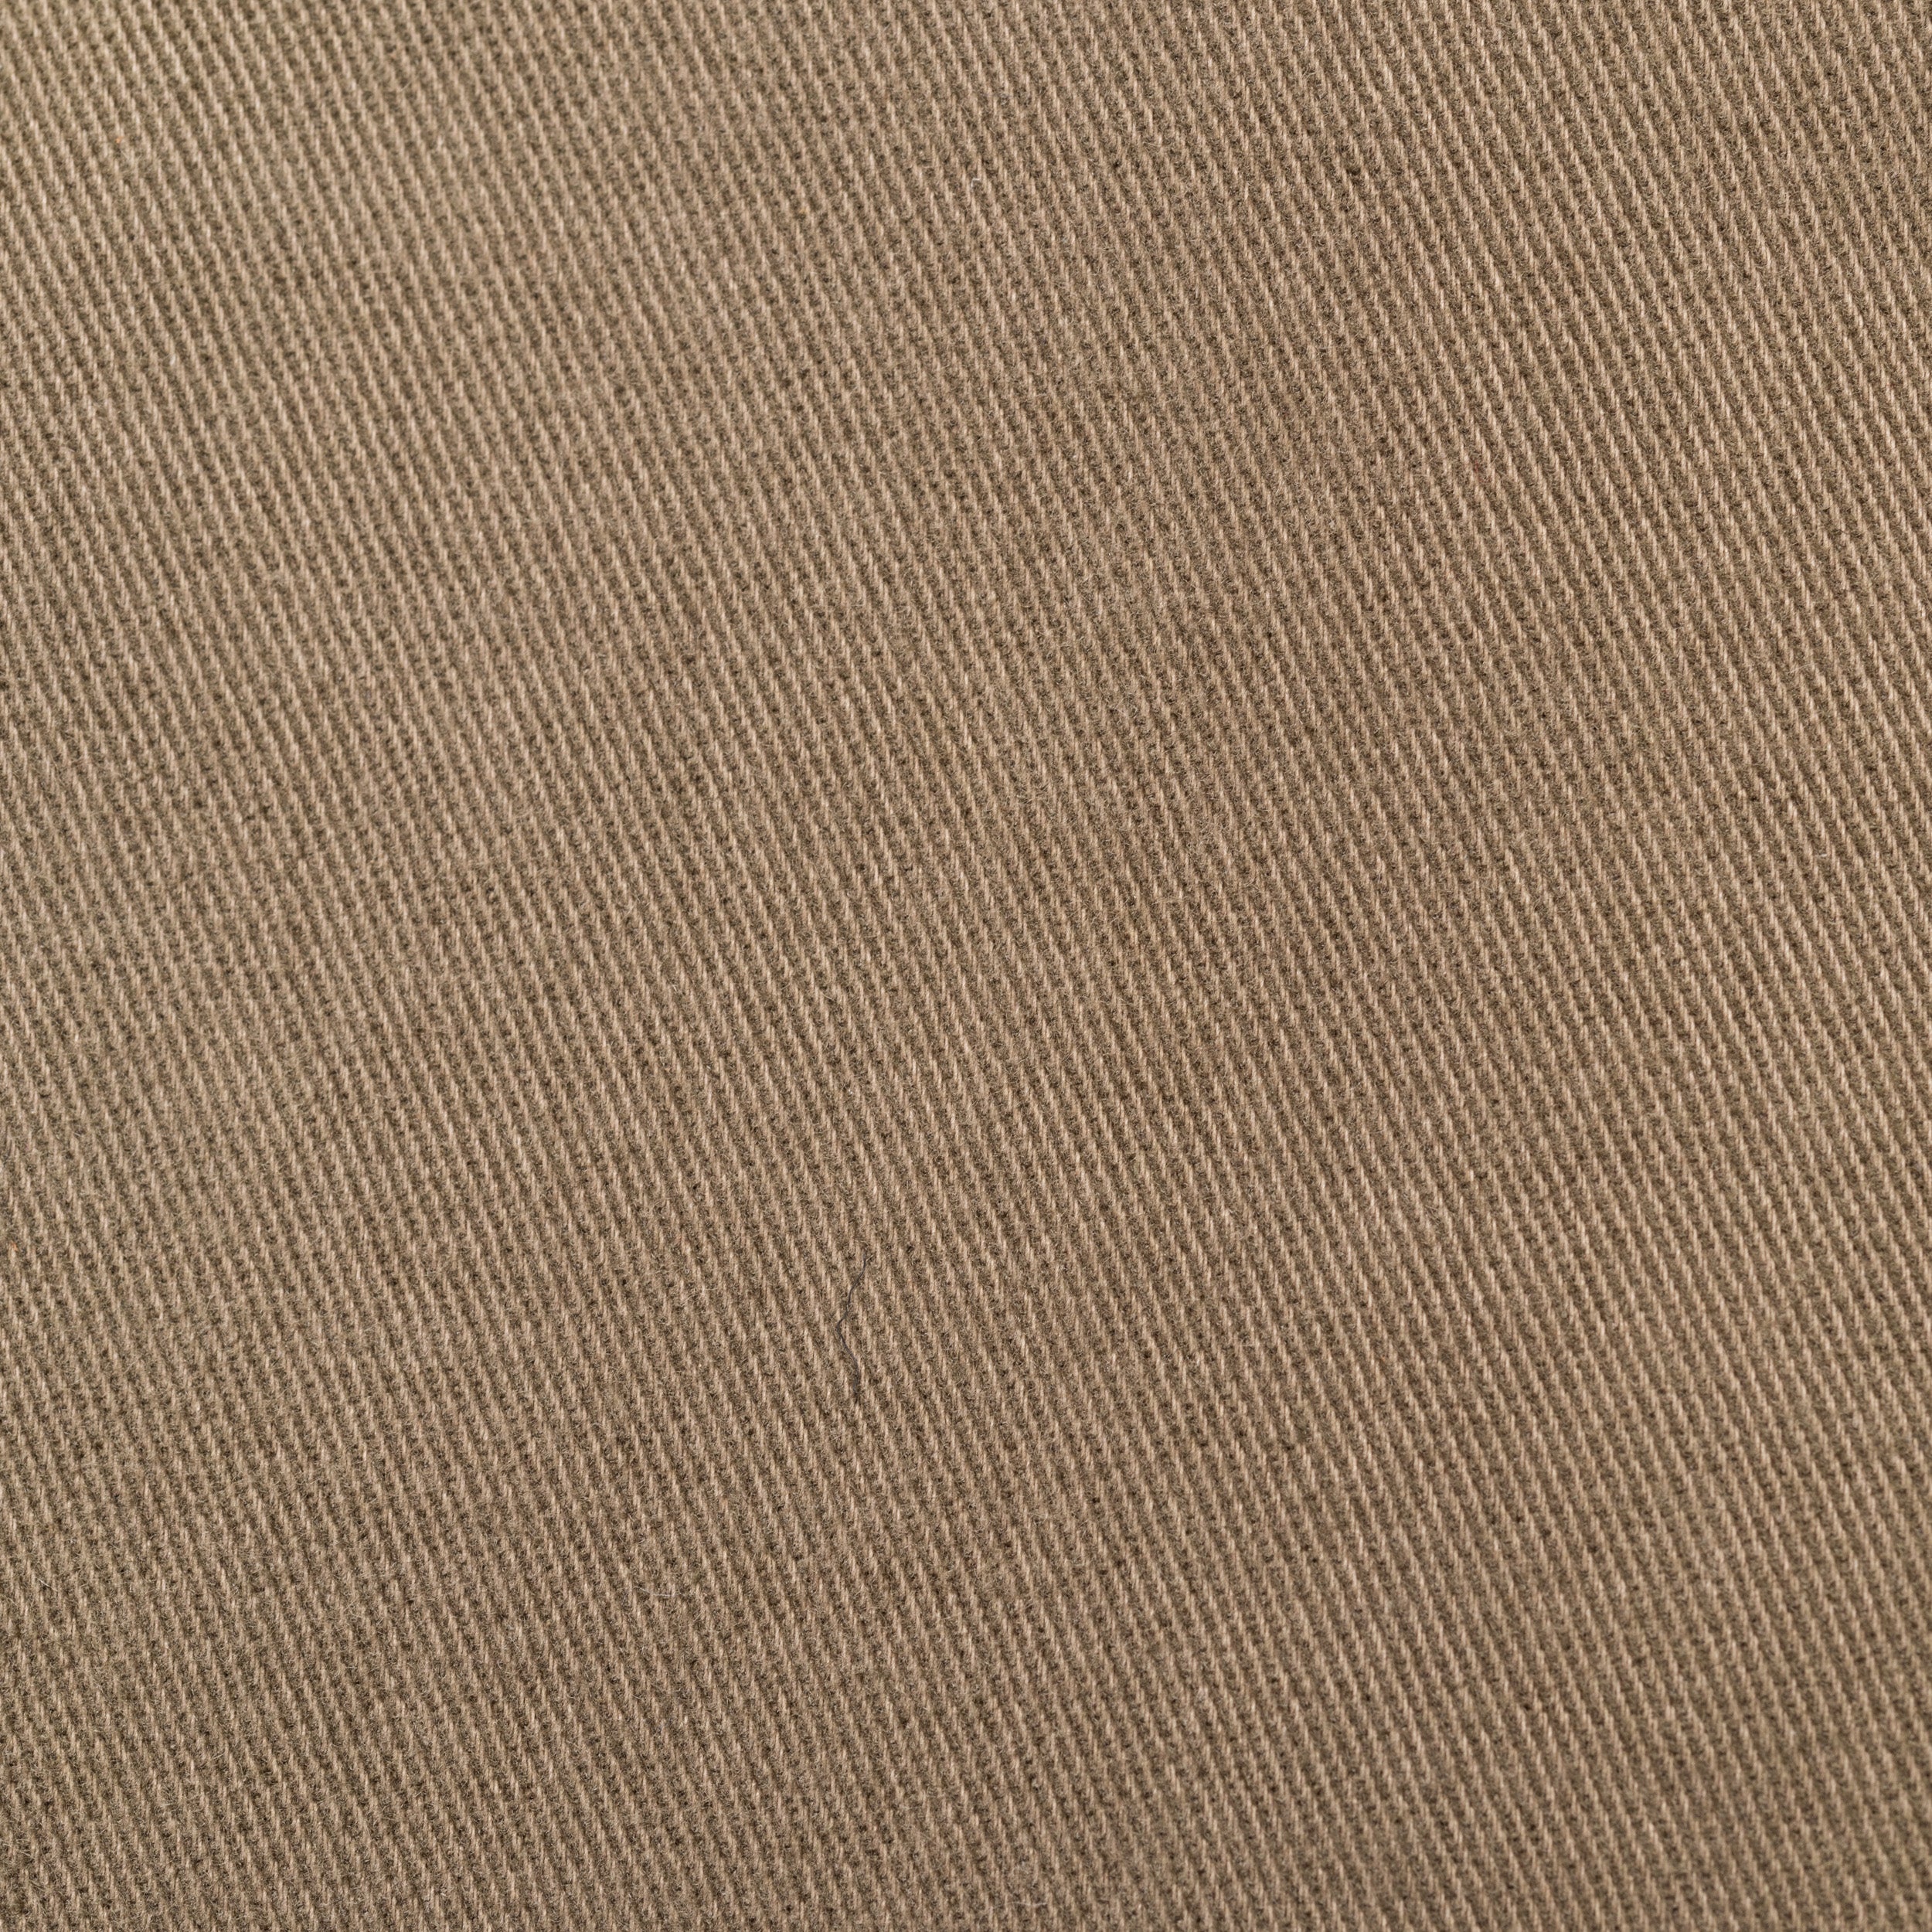 SARTORIA CASTANGIA Olive Twill Cotton Velvet Suit EU 50 NEW US 40 CASTANGIA